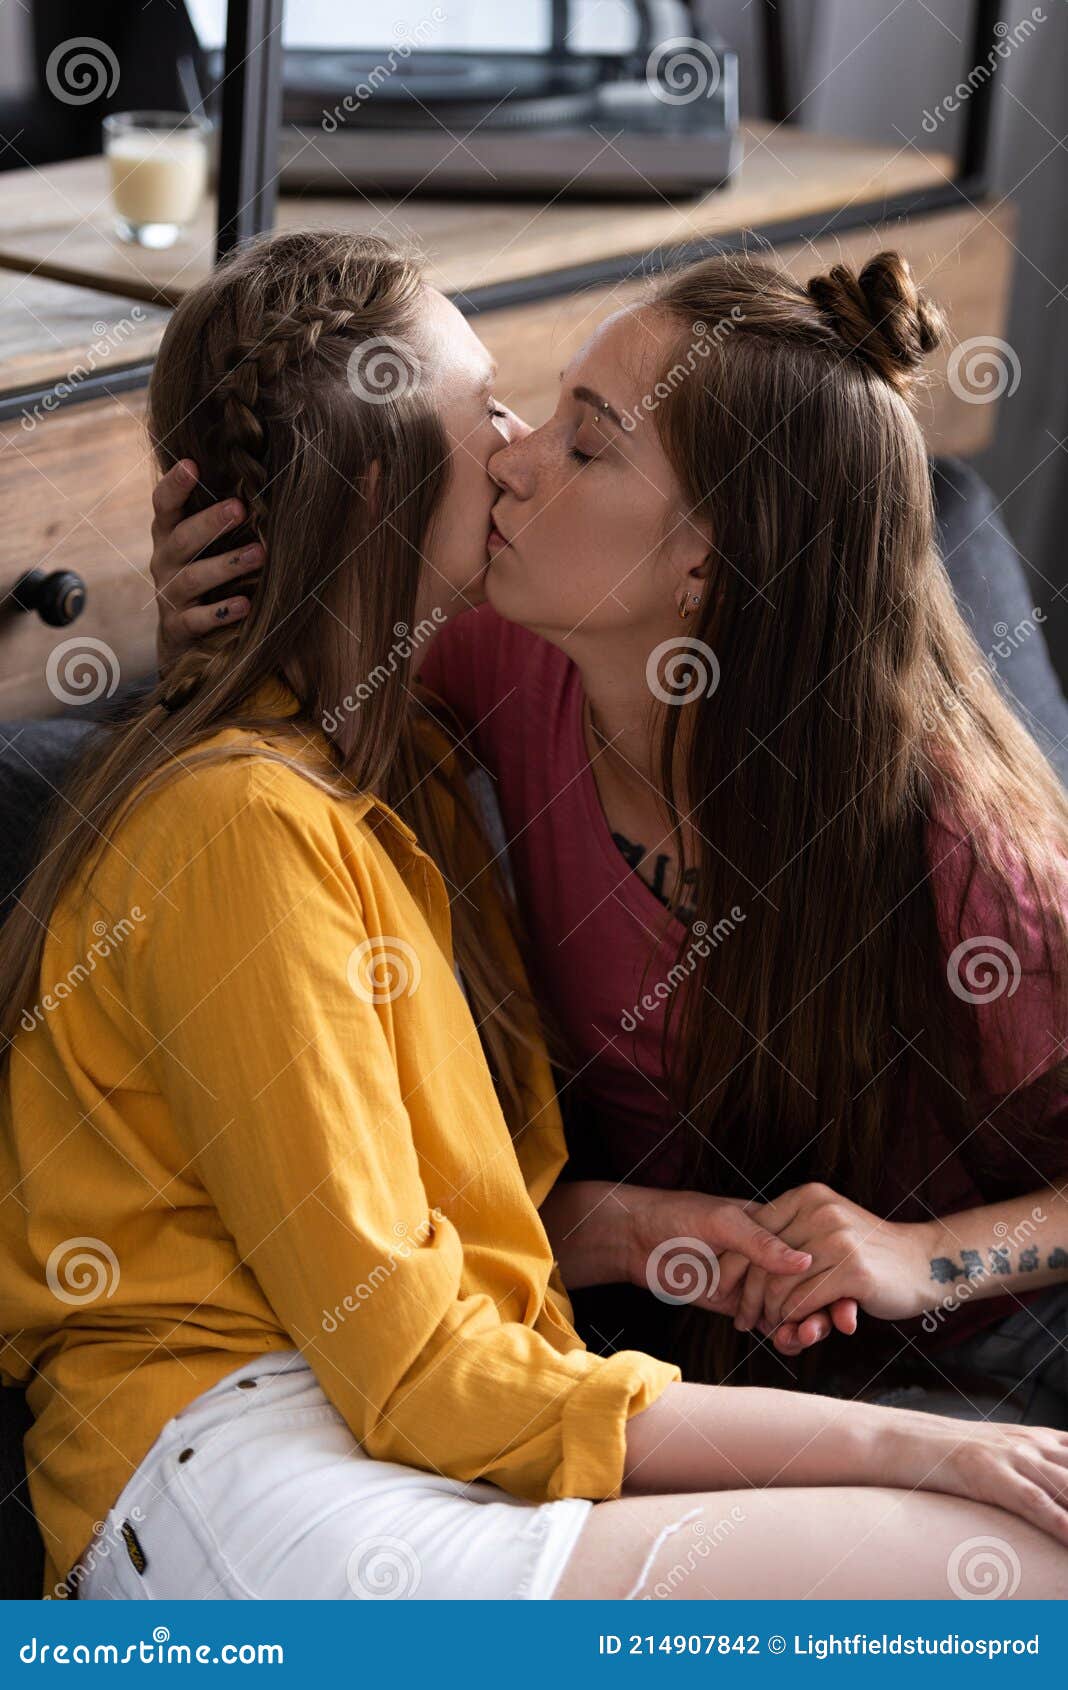 Lesbian hot kissing